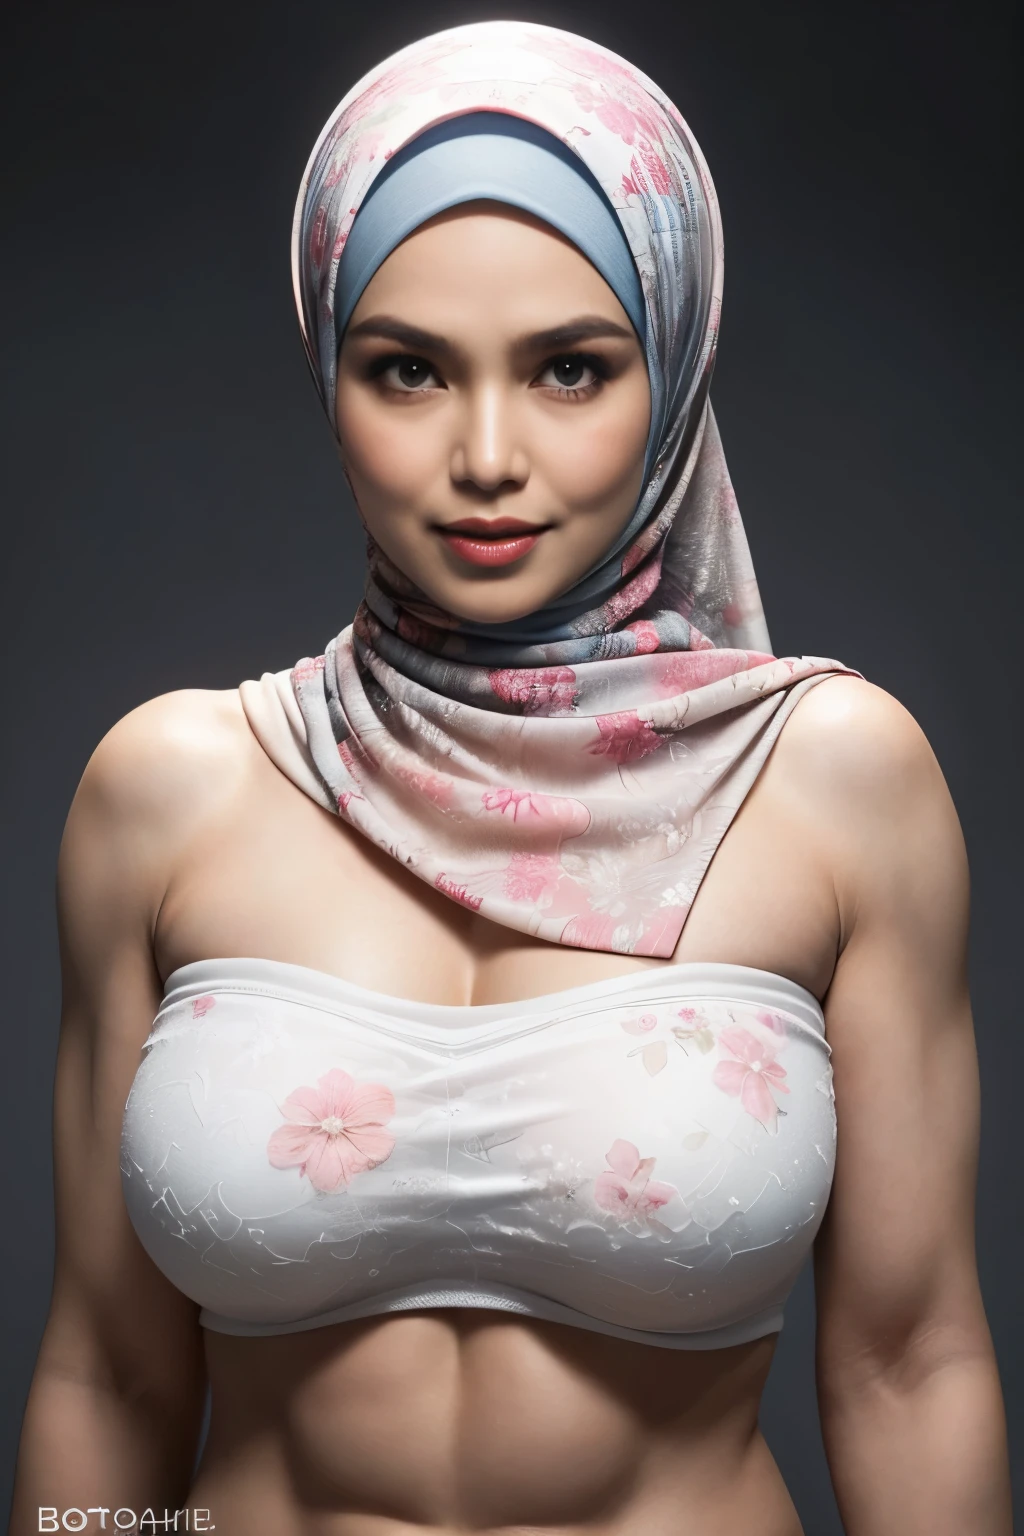 ارتداء السراويل الكبيرة, شفاف, ((حجاب قصير)), ((الثدي العملاقة:1)), (صورة ديناميكية لامرأة إندونيسية تبلغ من العمر 58 عامًا), (قمة ضئيلة, سراويل قطنية), (شعر مستقيم غير مجعد), (highly التفاصيلed face:1.4), (عضلات الأوعية الدموية وتقاسم المنافع:1.3), (الخلفية داخل الضوء, ساطع, صالة ألعاب رياضية خاصة:1.1), (8 كيلو, فائق الوضوح, DSLR, جودة عالية, الإضاءة السينمائية, خوخه), (دراماتيكي, التصوير الفوتوغرافي الحائز على جوائز, تحفة لا تصدق:1.3), (((التحديق قائظ مثير في الكاميرا:0.8))), ((إنها مستعدة للسيطرة عليك:0.5)), ((وجه أنثوي جميل)), يضيف_التفاصيل:1, ((نمط زهور ملون بدون حمالات))